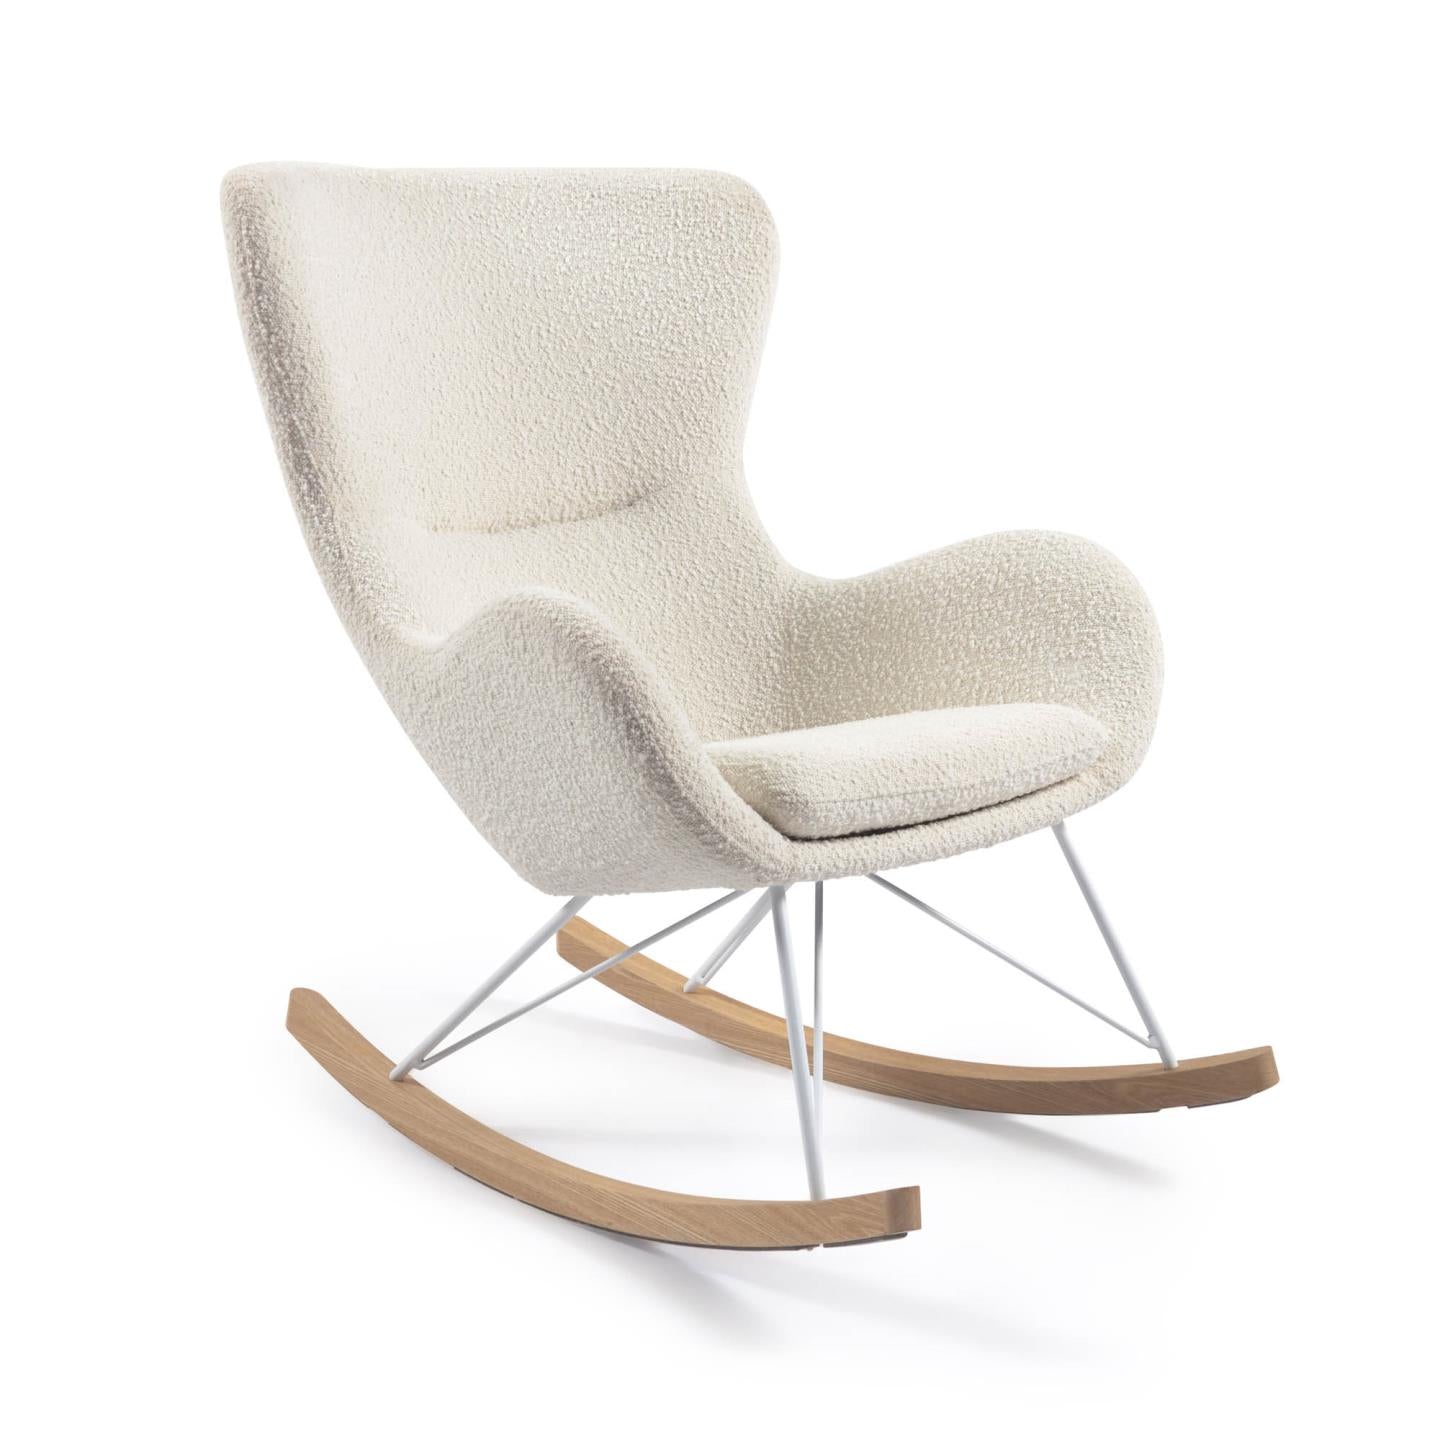 Home Vania schommelstoel wit – HelloChair